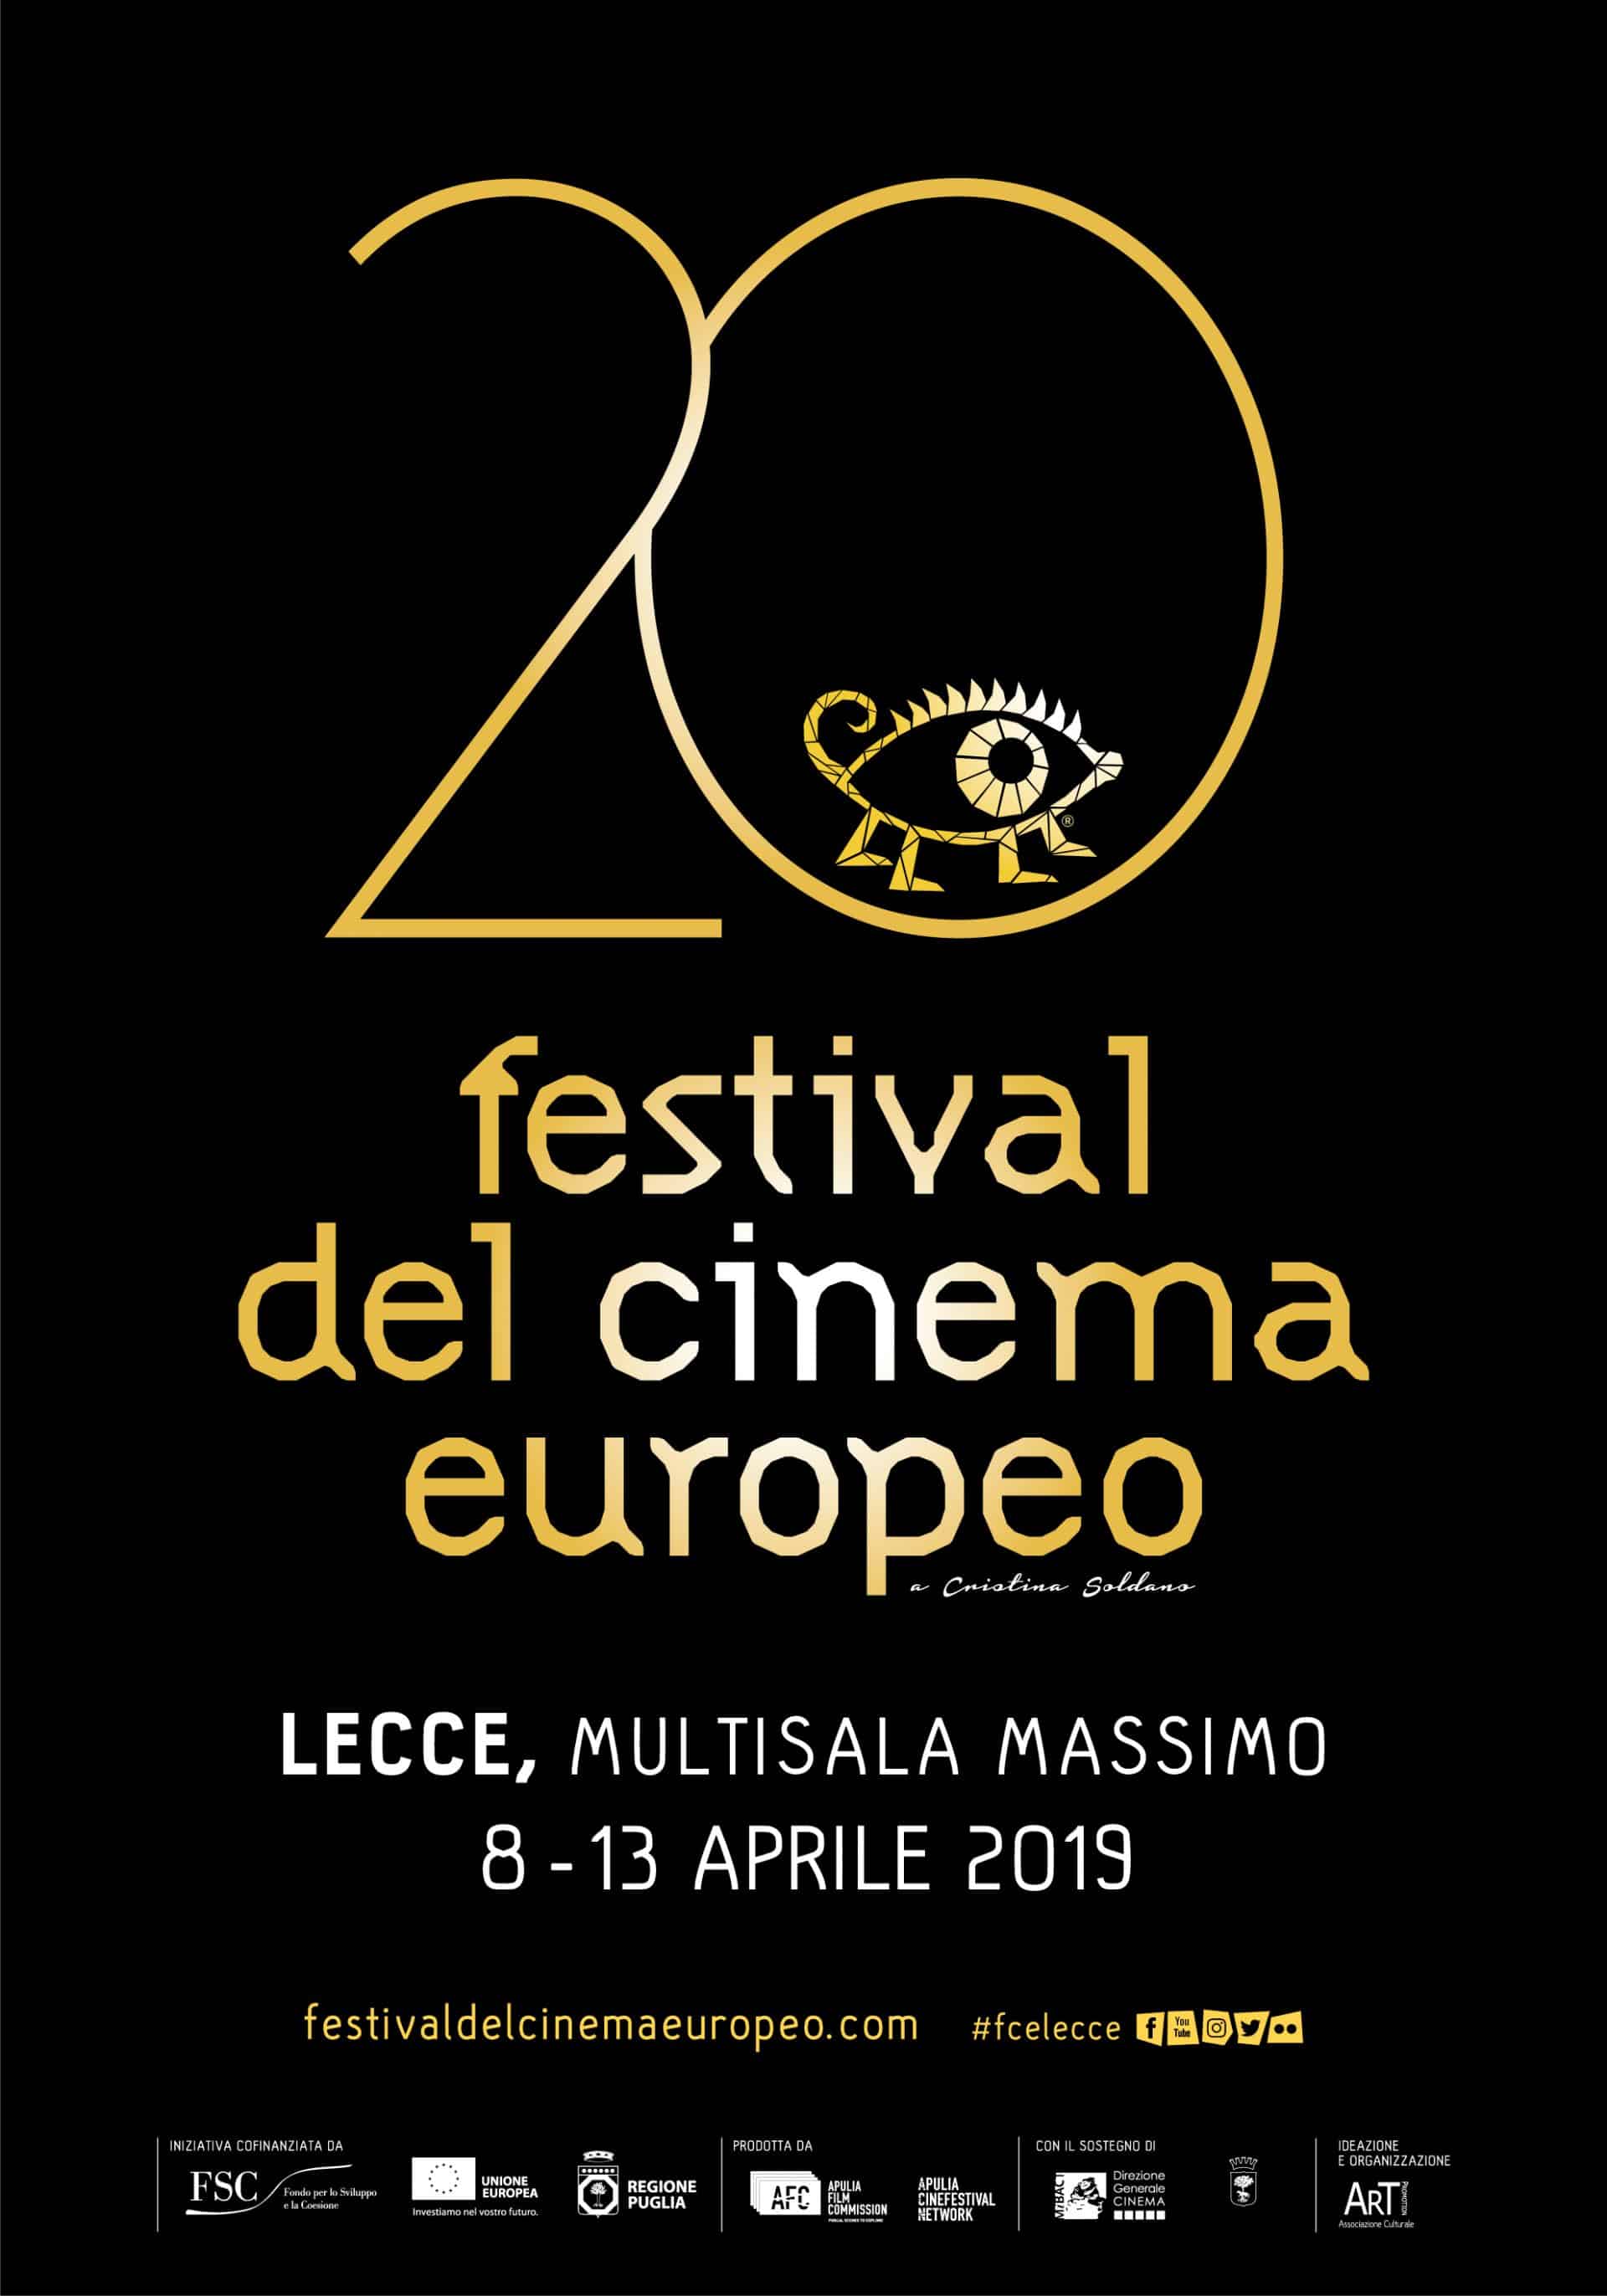 Festival del Cinema Europeo cinematographe.it